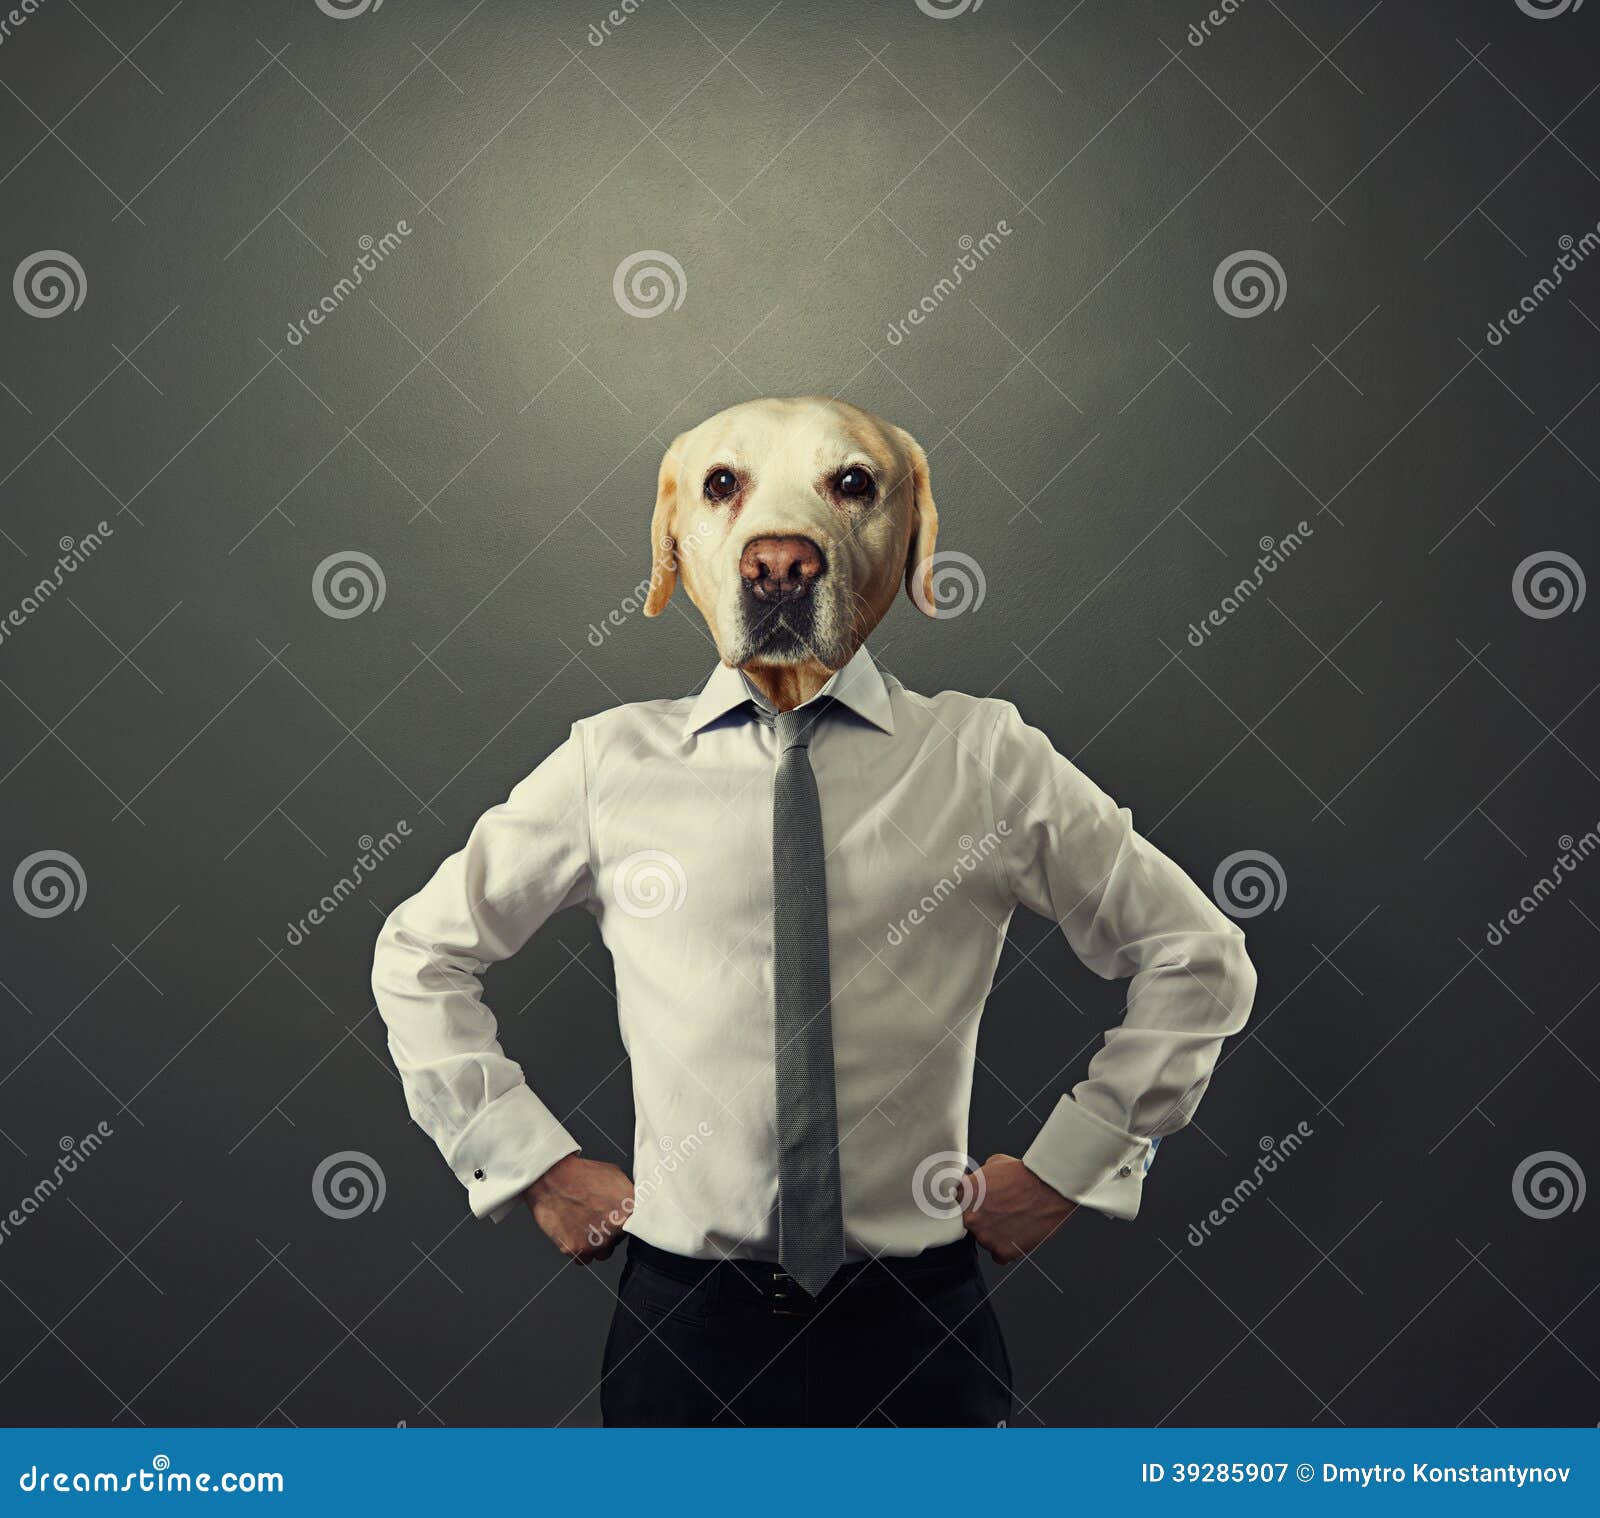 Орлов стендап с головой собаки. Человек с башкой собаки. Деловой человек с головой собаки.